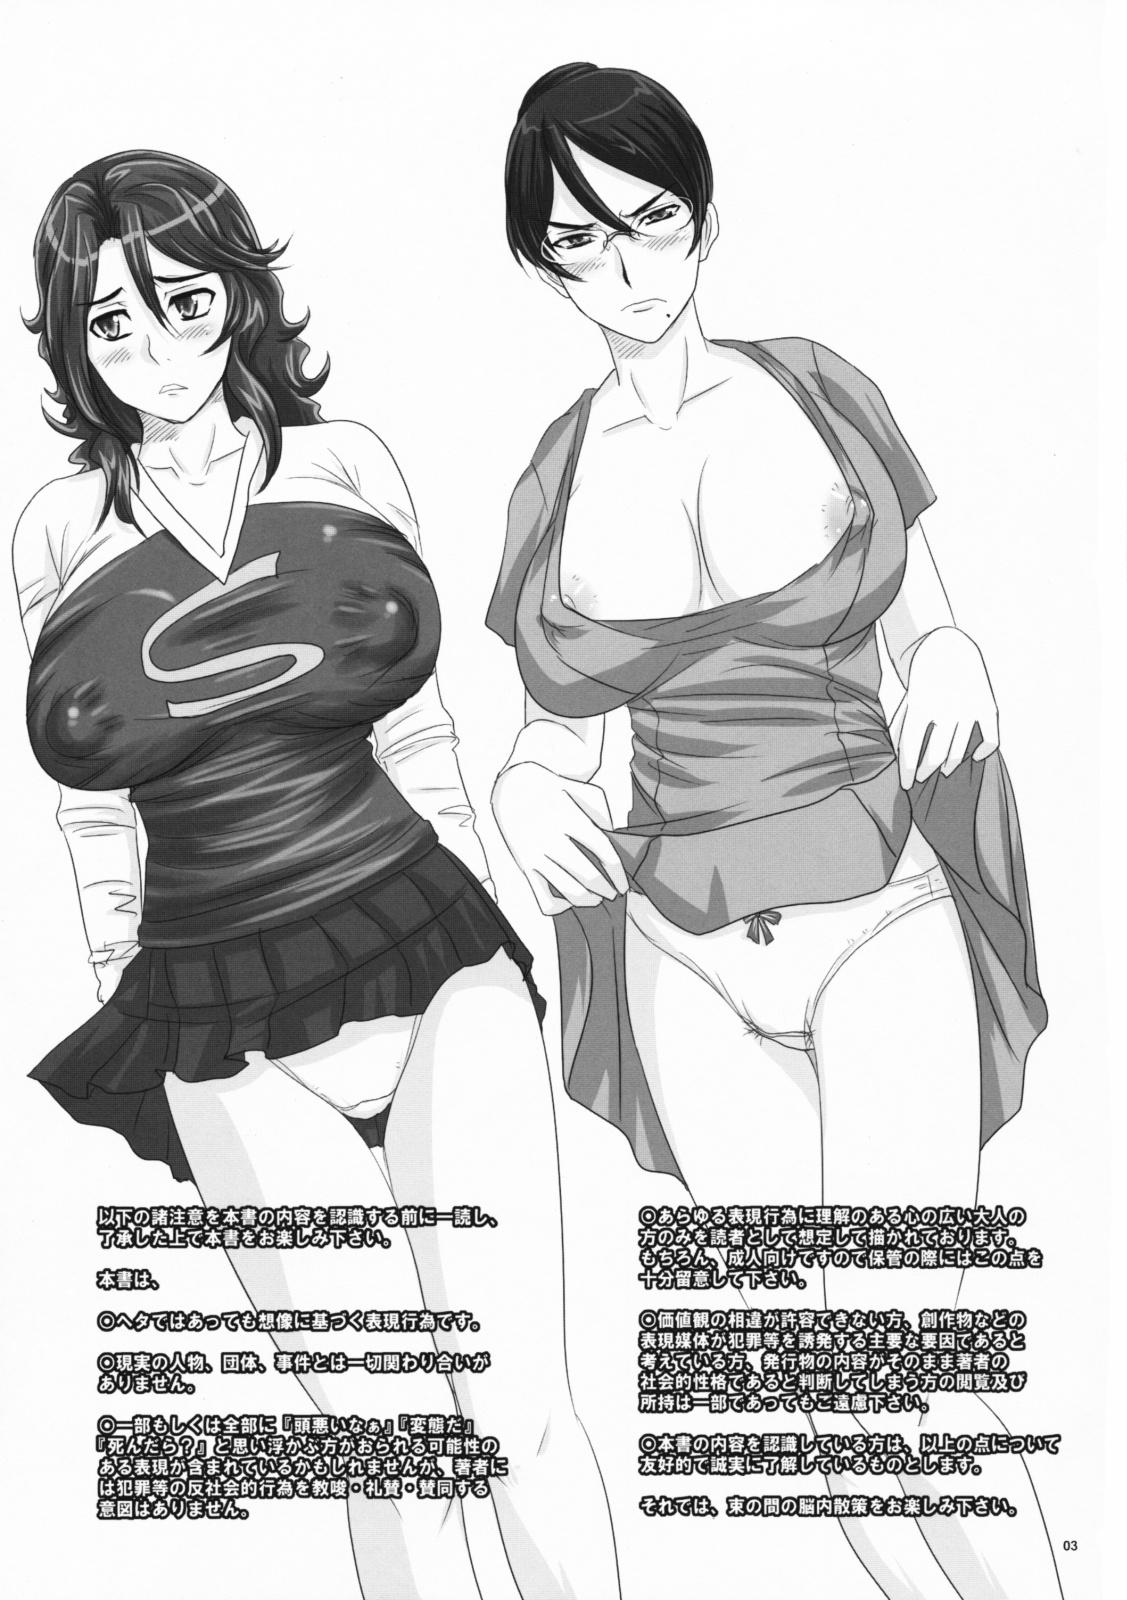 Teen (SC42) [Nozarashi (Nozarashi Satoru)] Nyuu -Generation MaSra-O (Mobile Suit Gundam 00) - Gundam 00 Solo Female - Page 2